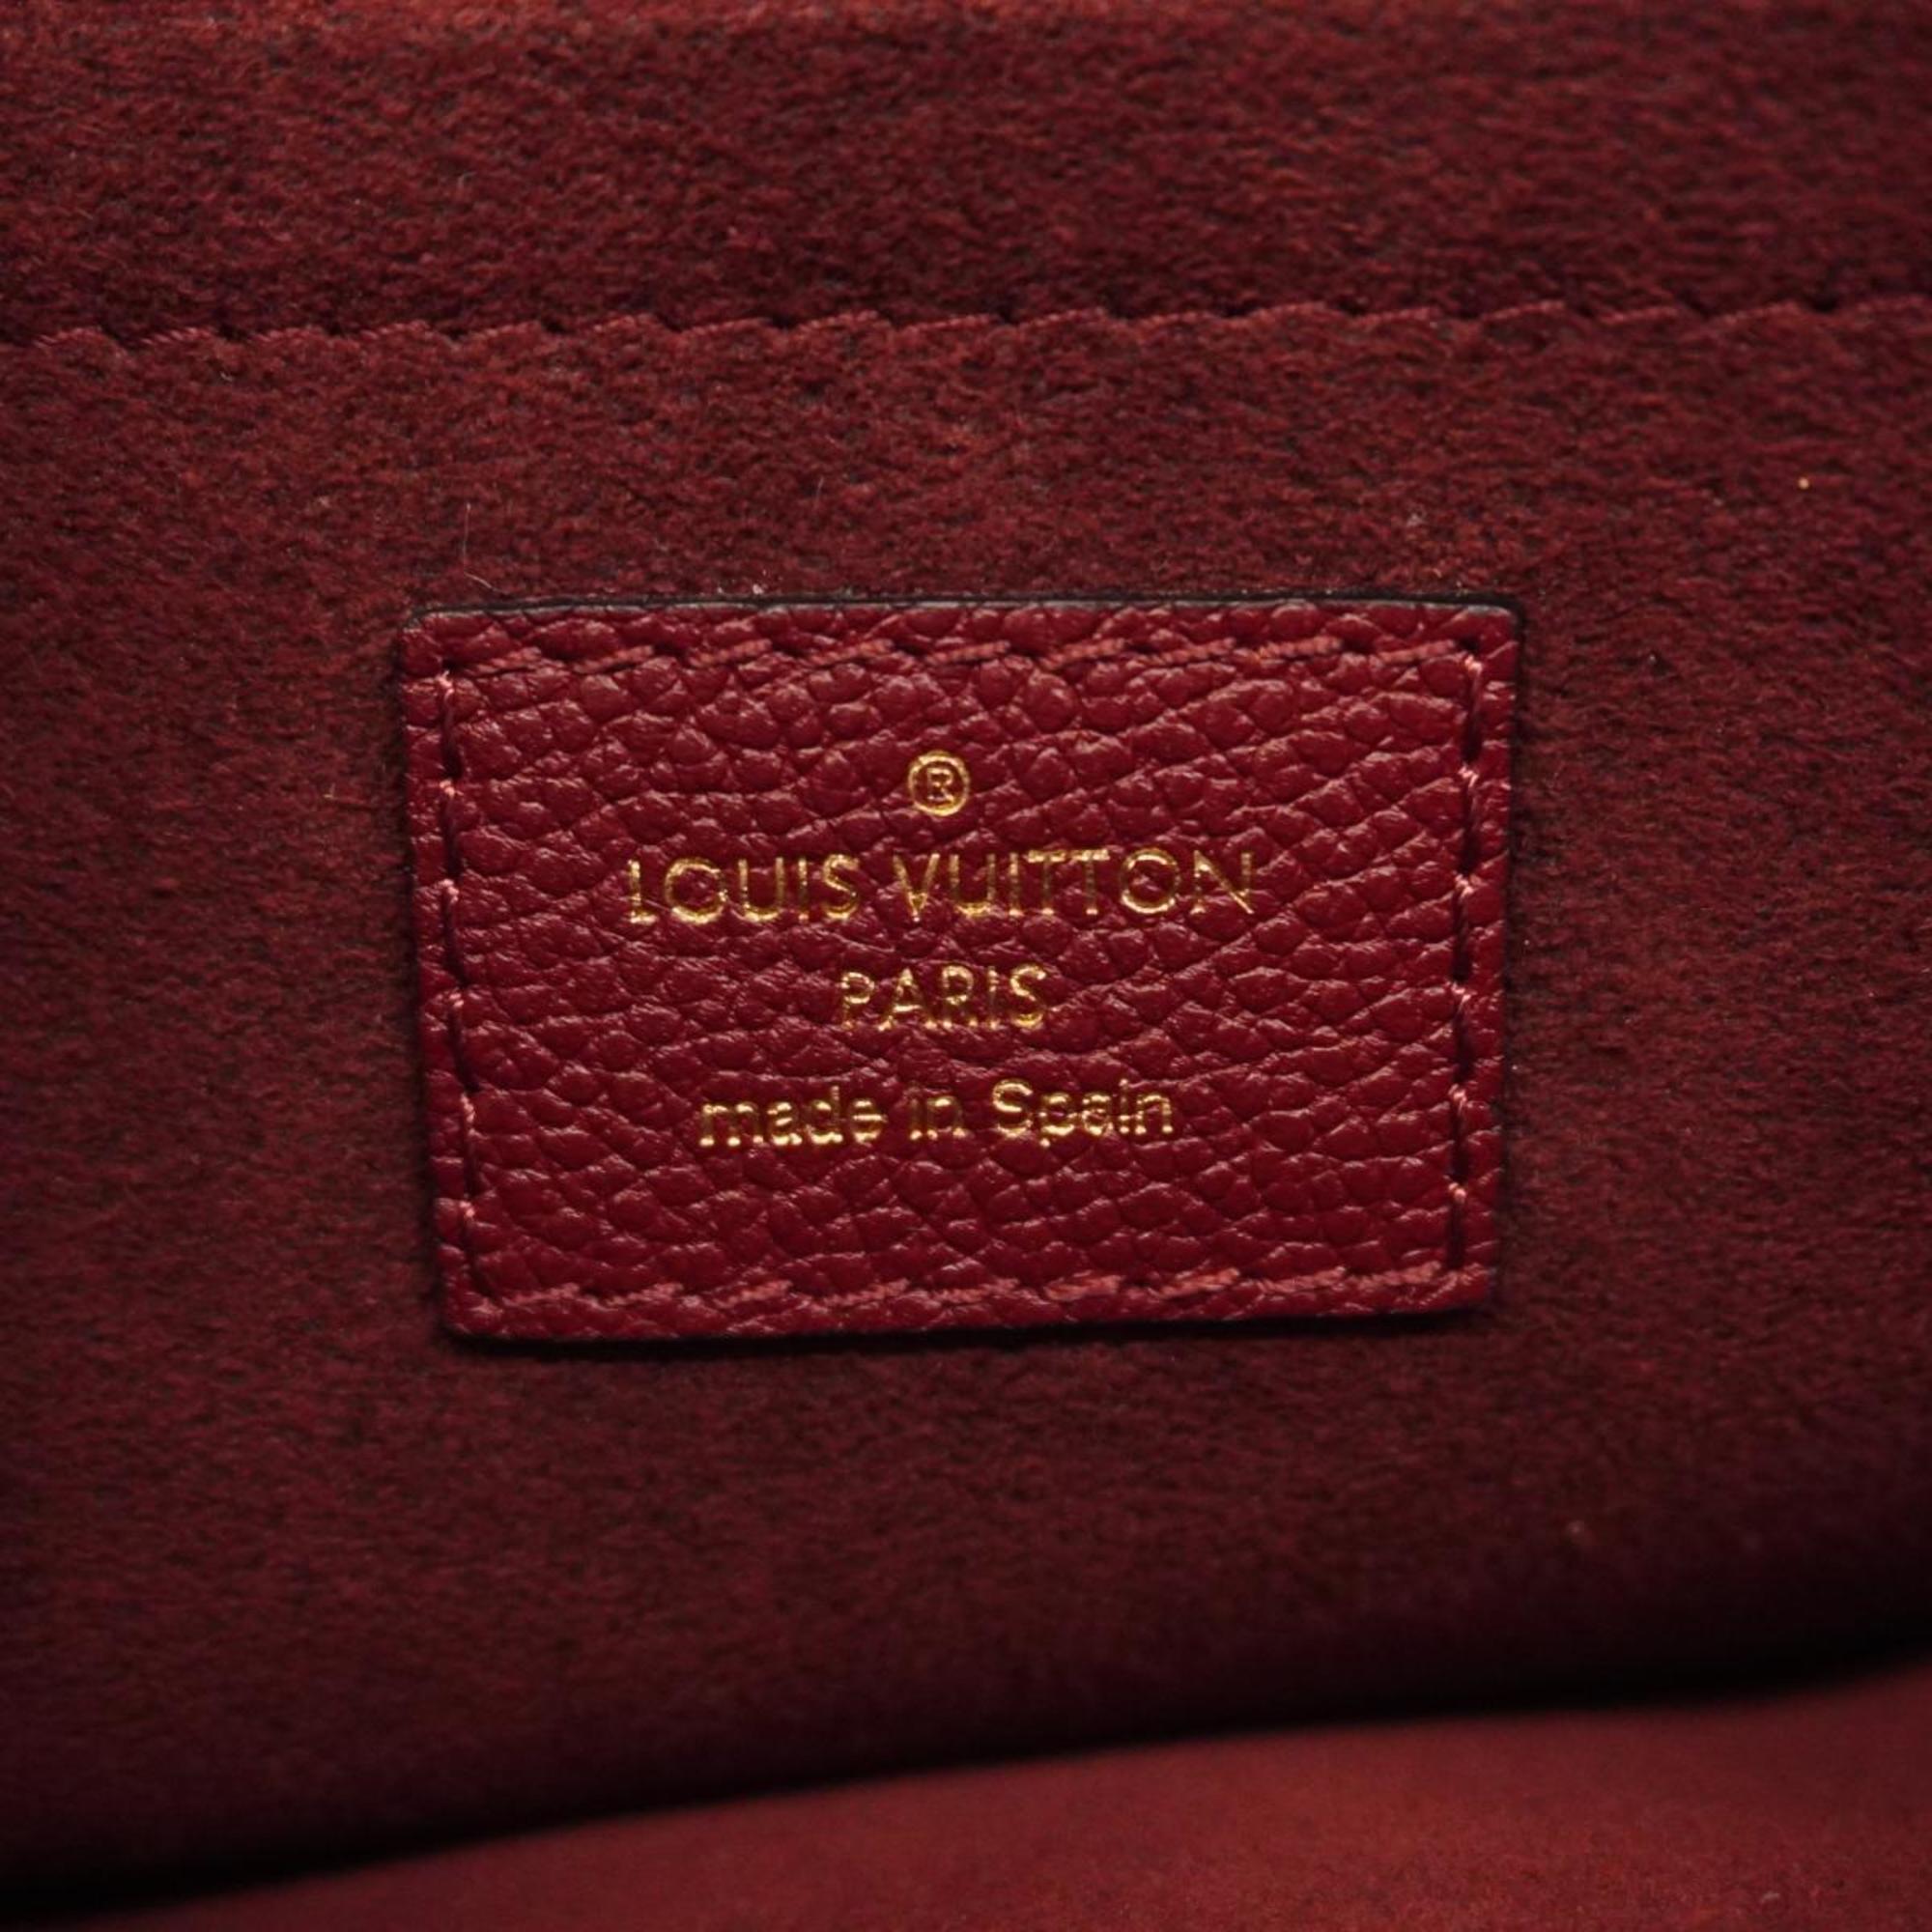 ルイ・ヴィトン(Louis Vuitton) ルイ・ヴィトン ショルダーバッグ モノグラム サンプラシード M43715 ブラウン ボルドーレディース